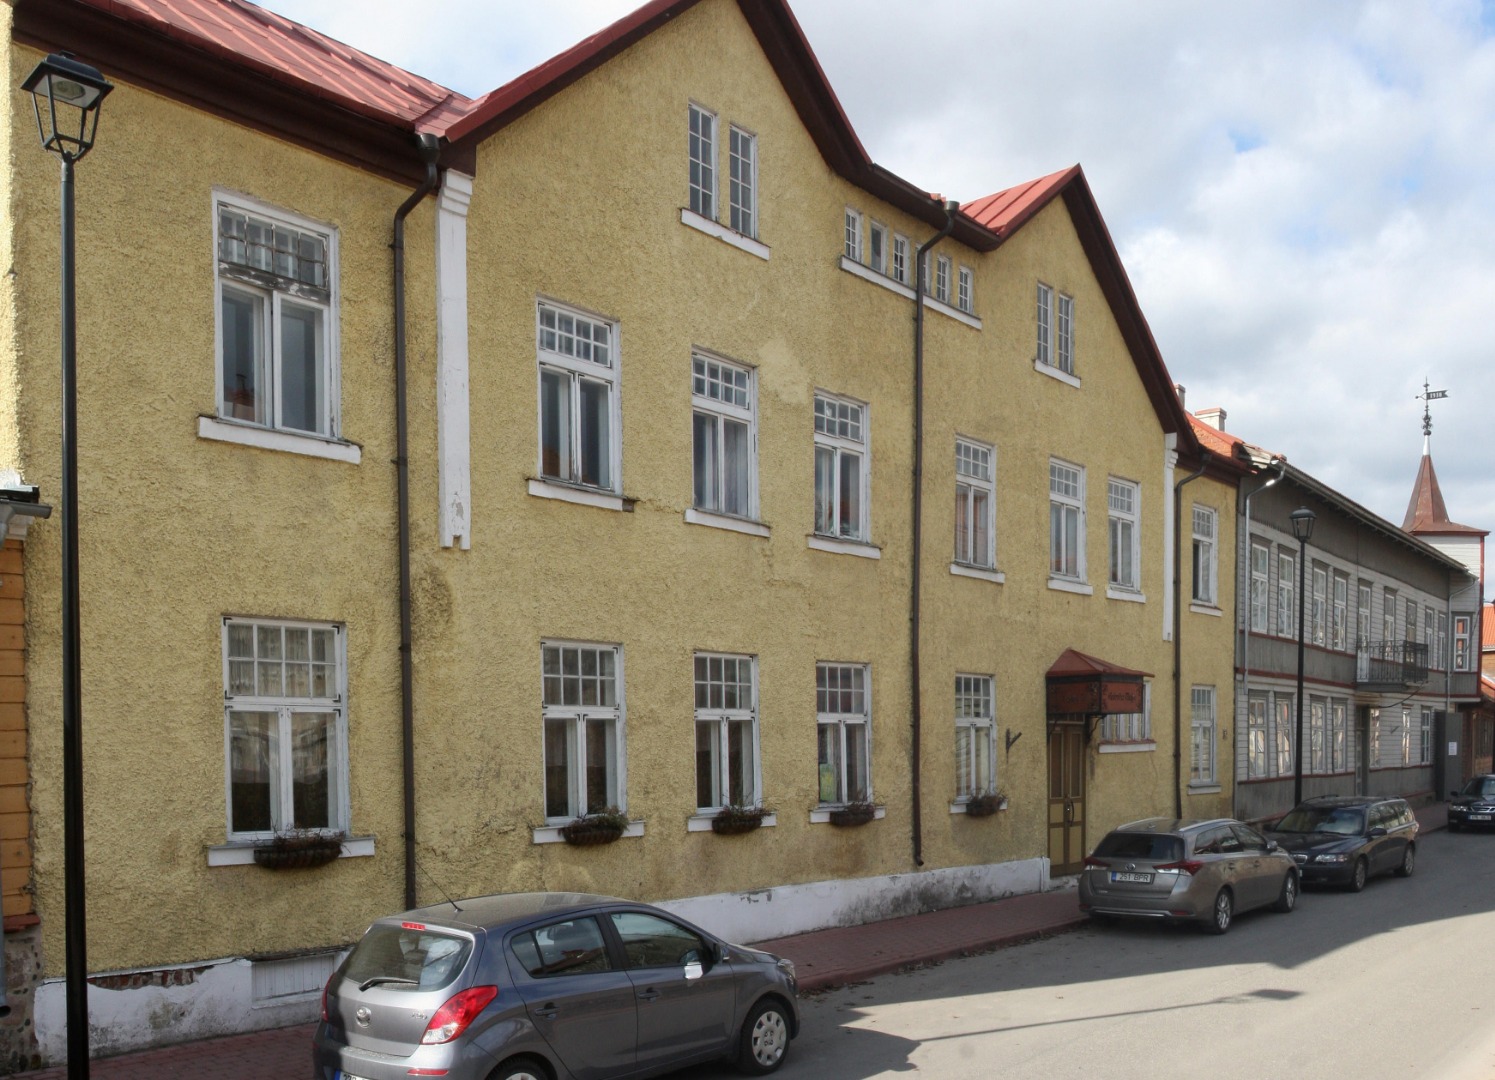 foto, Viljandi, Sprohge hotell (Lossi tn 7), u 1915, foto J. Riet rephoto